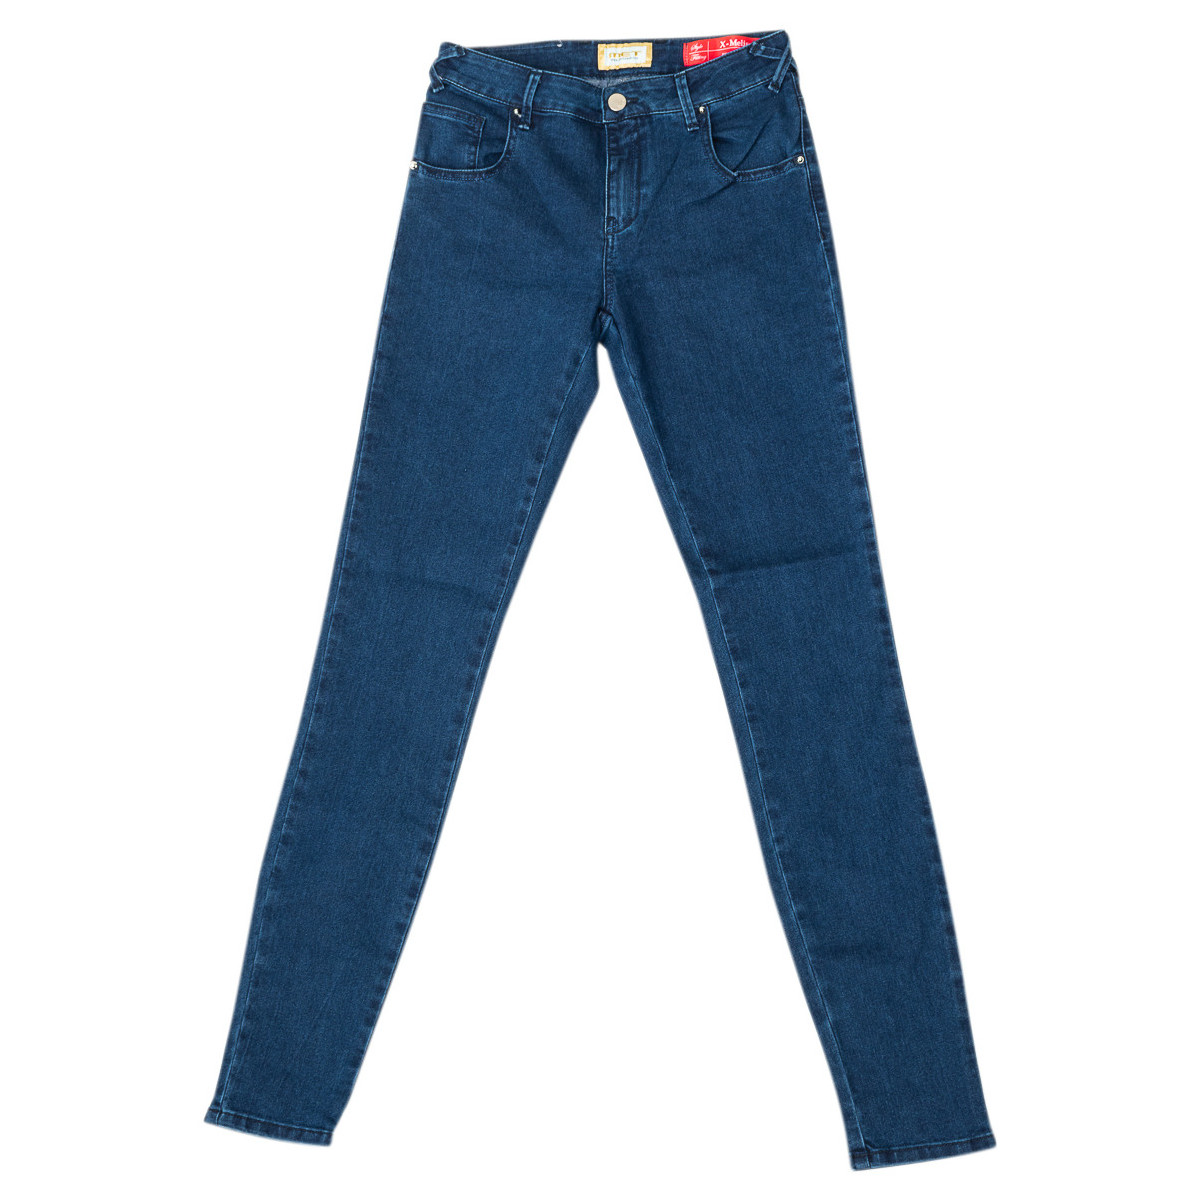 Textiel Dames Broeken / Pantalons Met 10DB50154-D1069-6094 Blauw